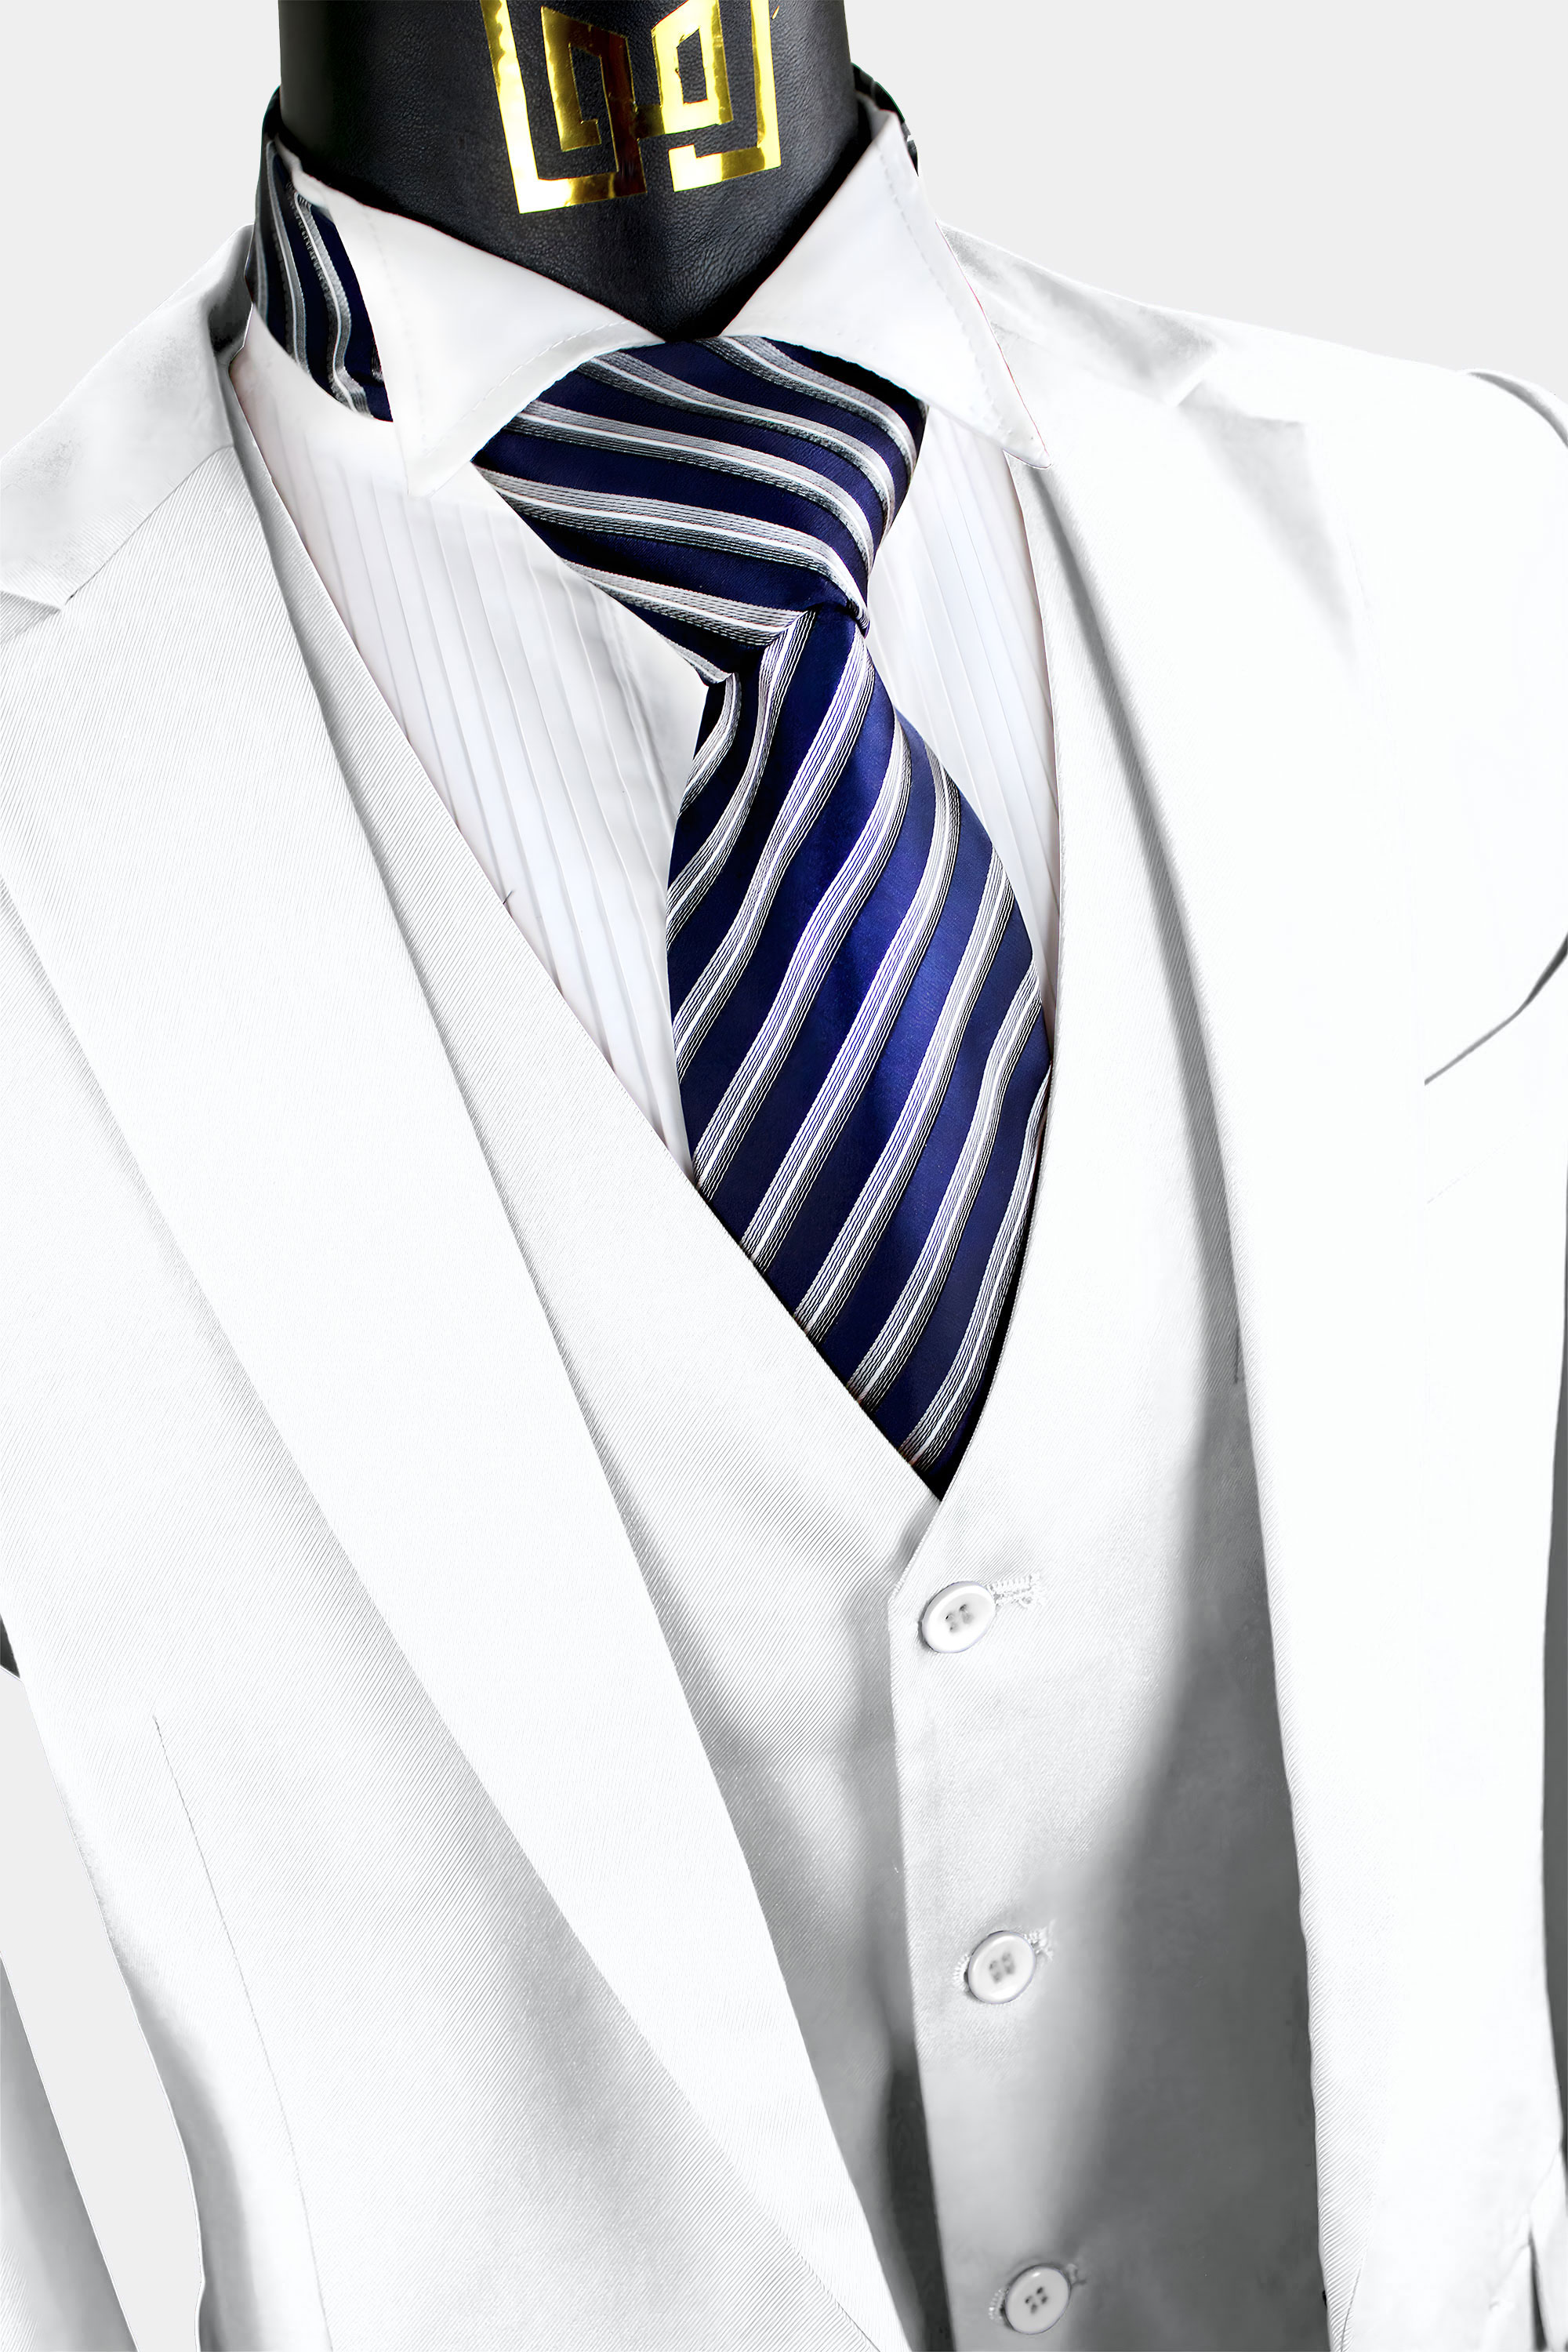 White-Suit-Jacket-For-Men-from-Gentlemansguru.com